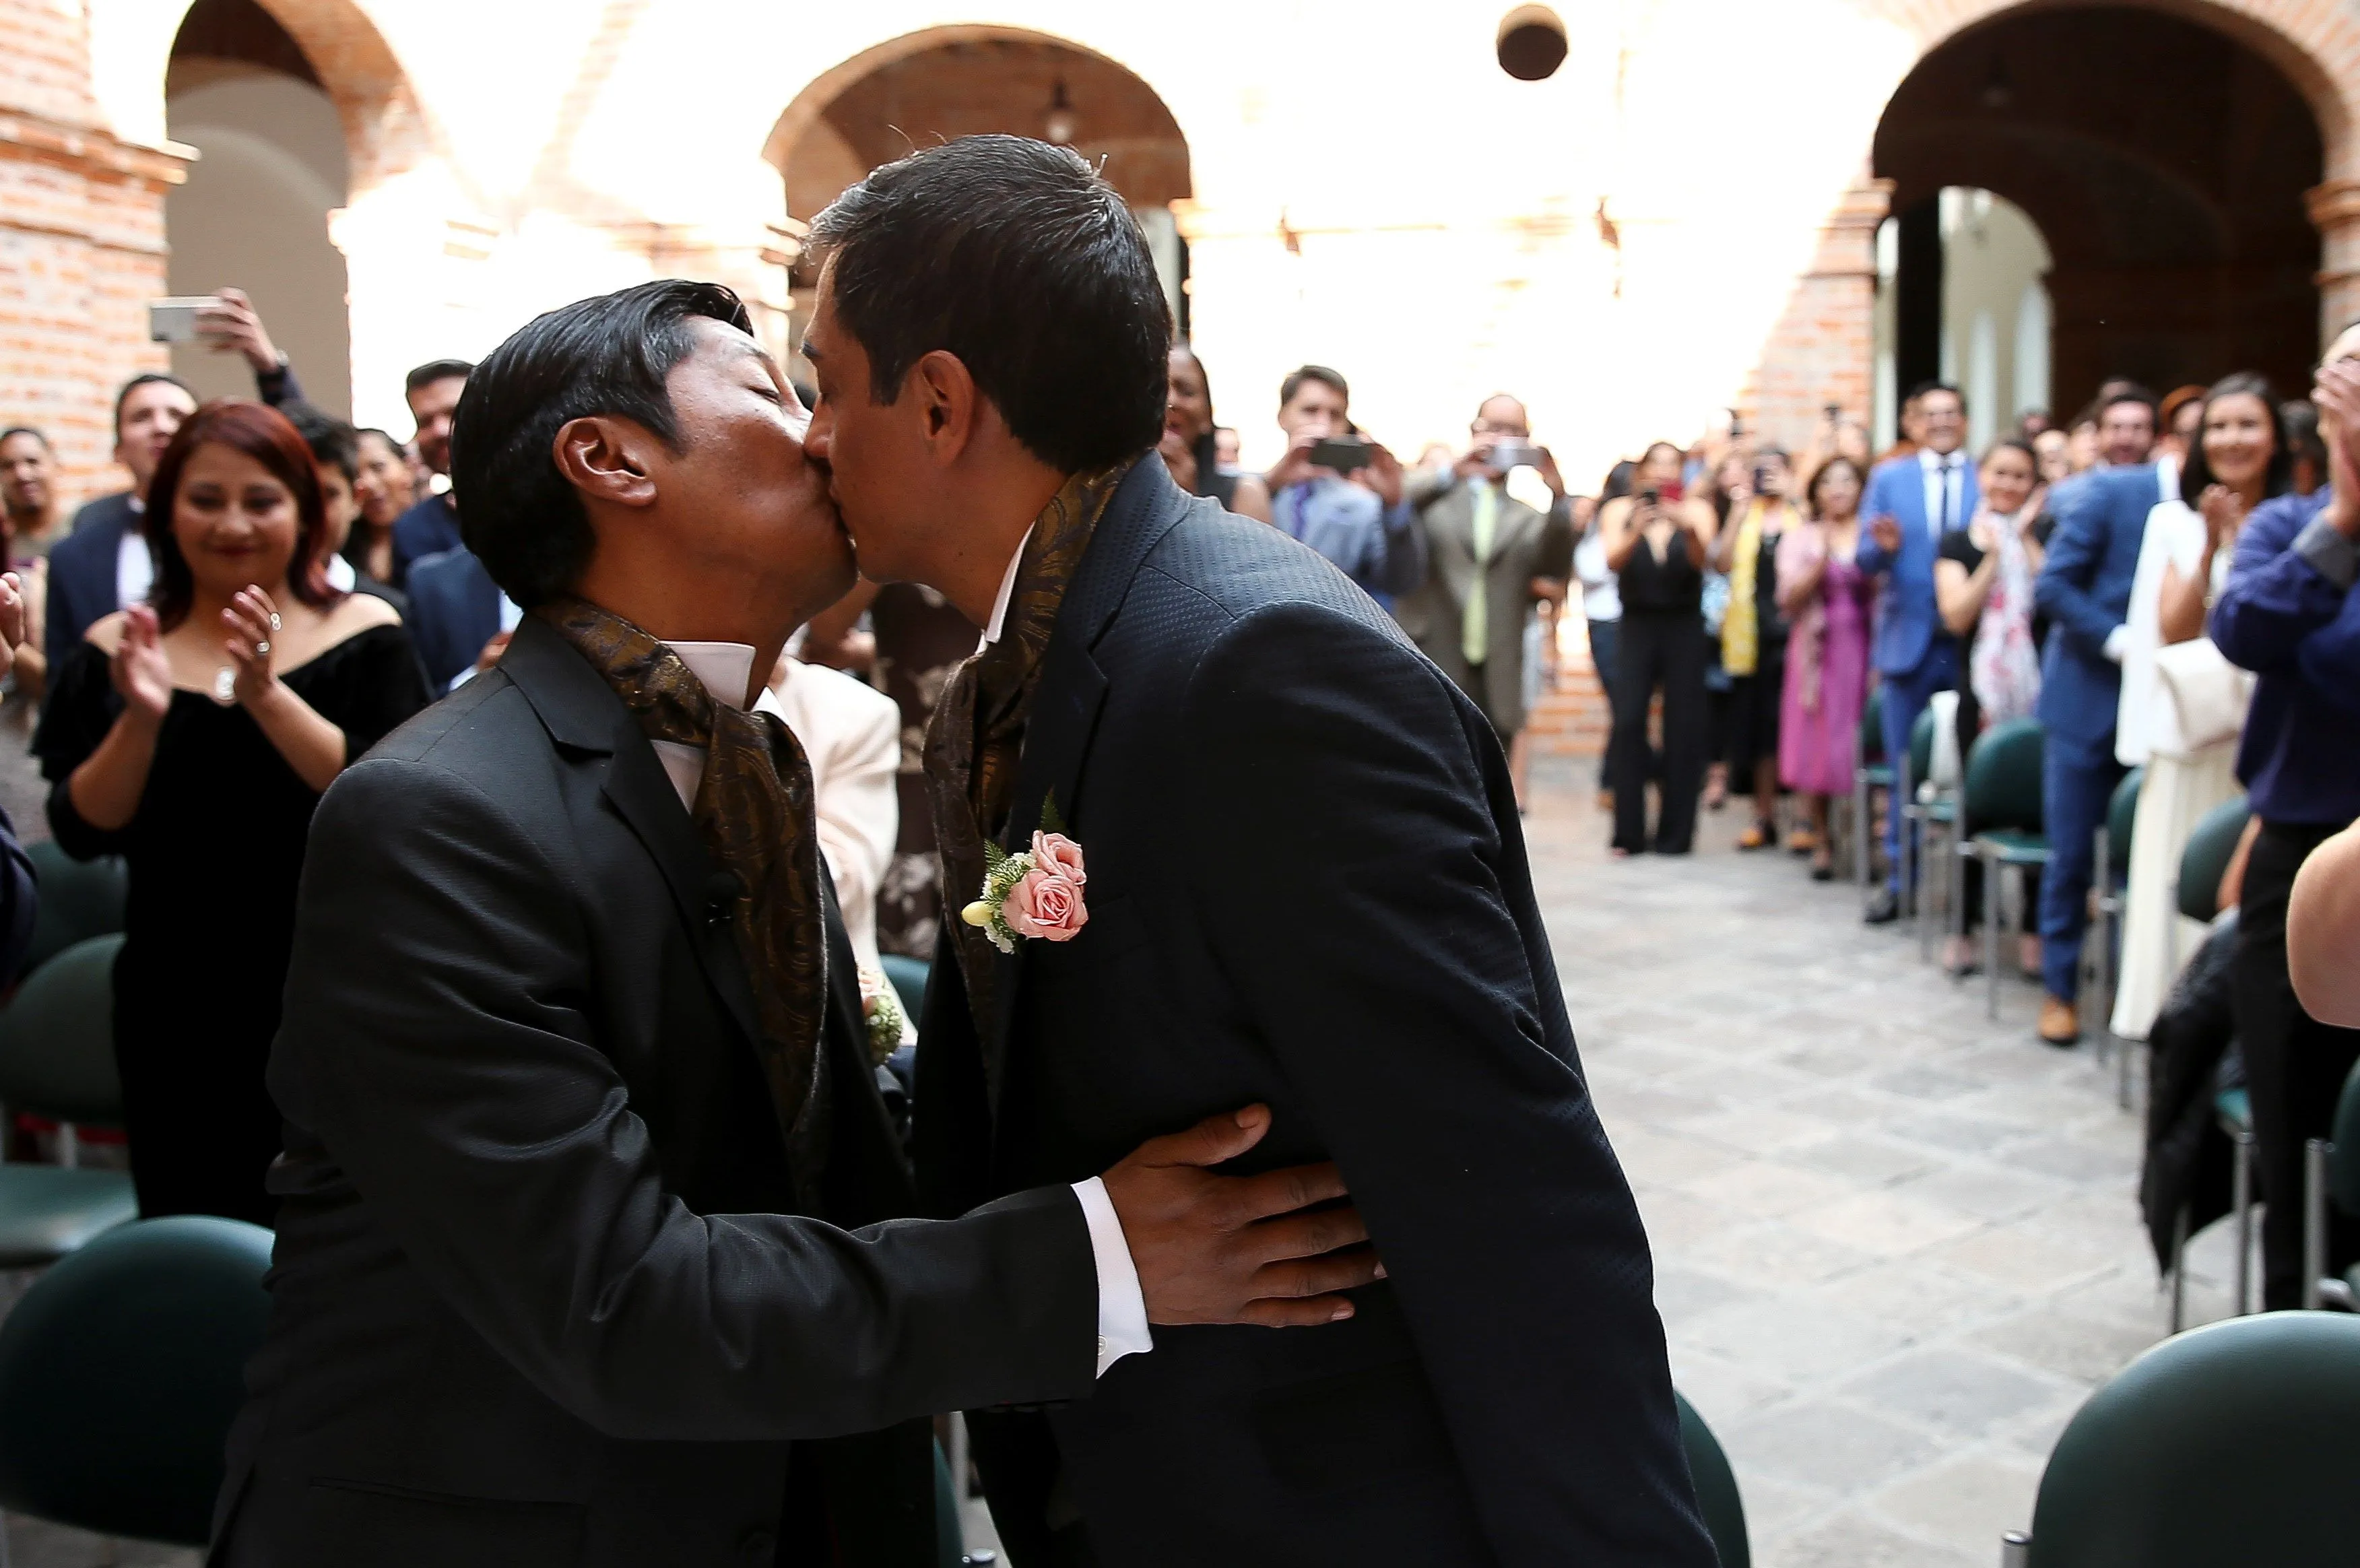 Templos católicos alemanes abren para bendecir parejas, también homosexuales